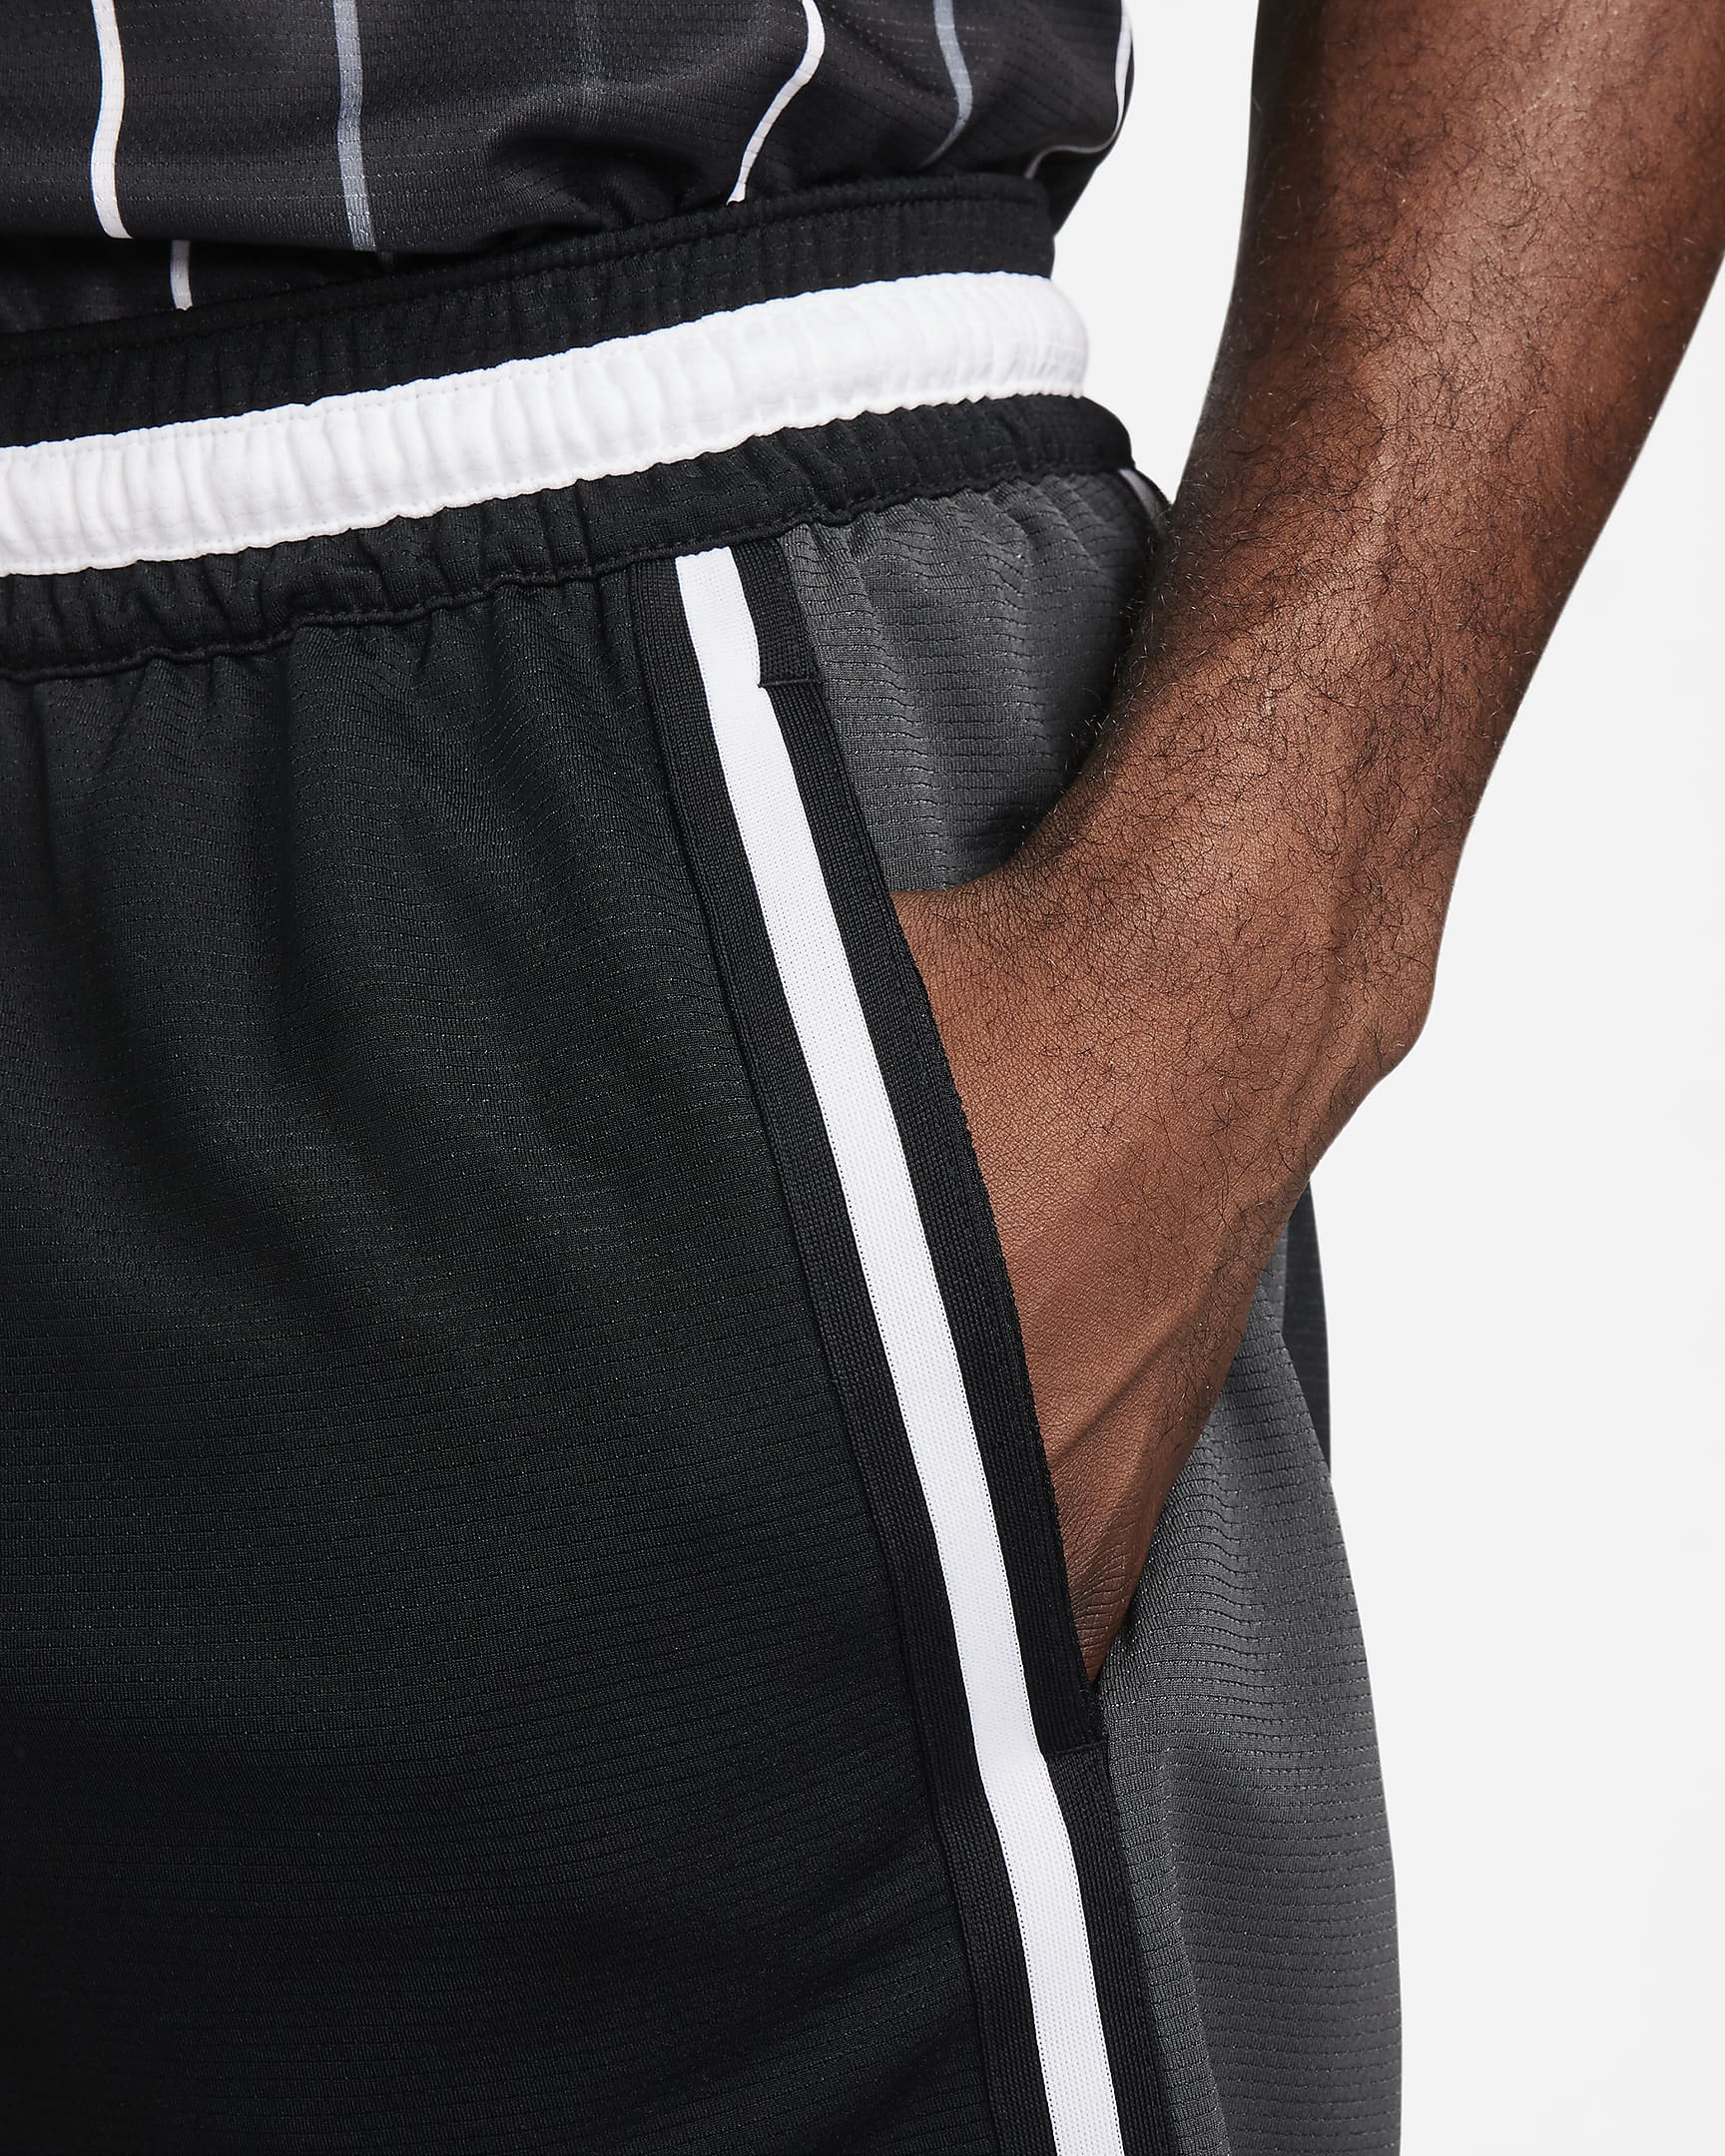 Brooklyn Nets Men's Nike Dri-FIT NBA Pre-game Shorts. Nike LU